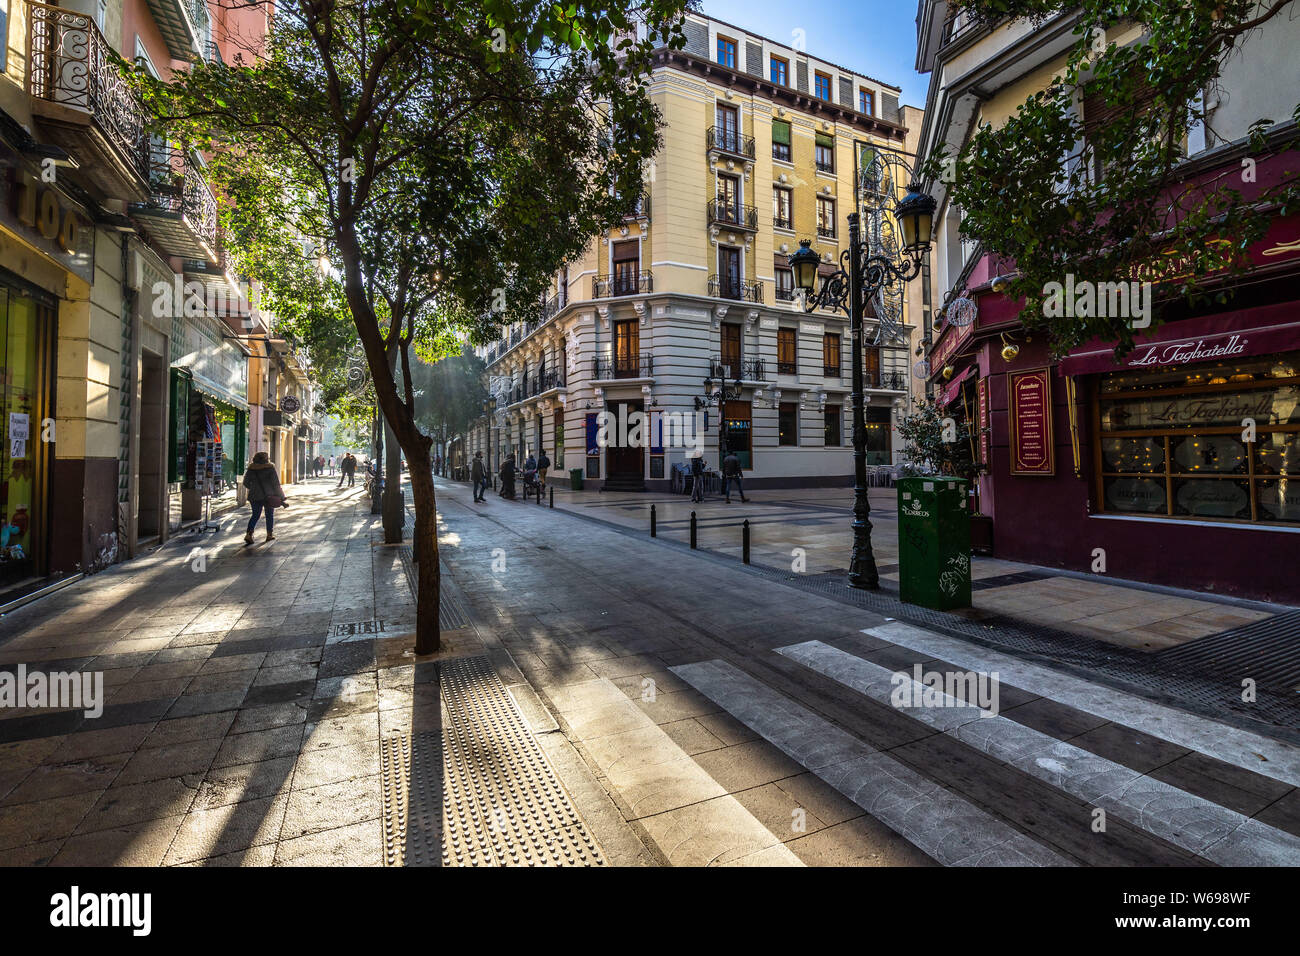 A typical street in Zaragoza old town. Zaragoza, Aragon, Spain, December 2018 Stock Photo